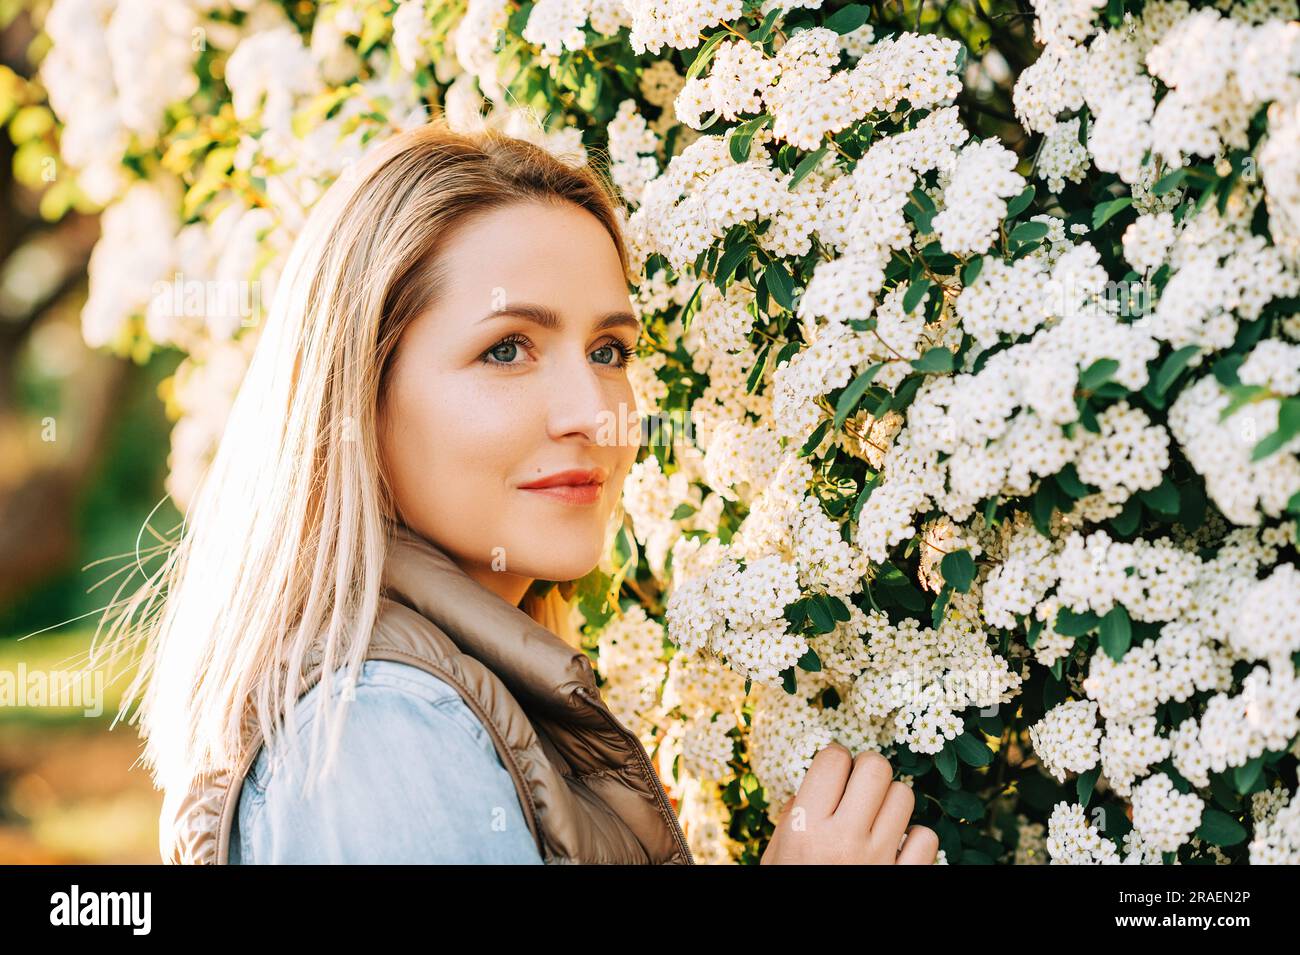 Frühling Nahaufnahme Porträt einer hübschen jungen Frau, die draußen im Blumengarten posiert Stockfoto